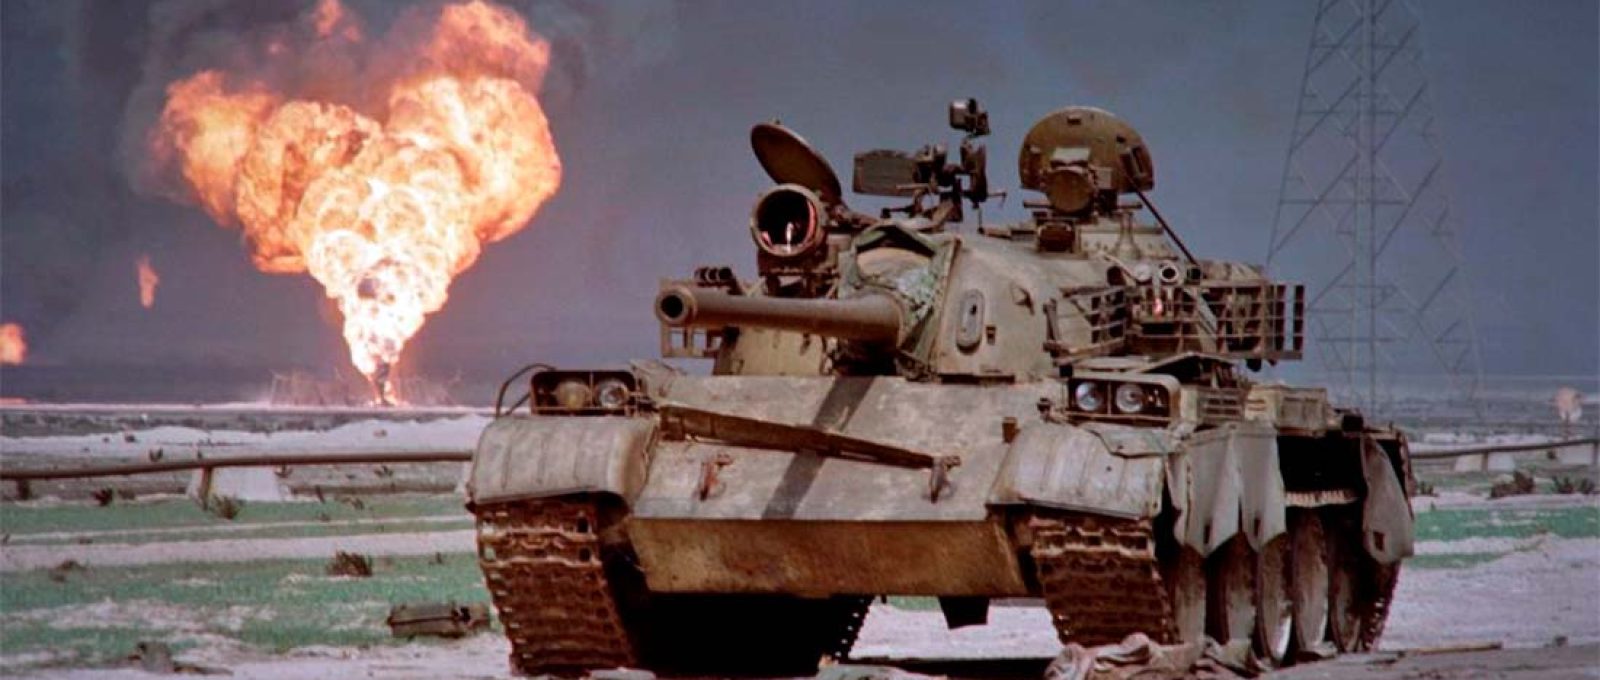 Tanque T-62 iraquiano abandonado no deserto do Kuwait em 2 de abril de 1991 (AFP).